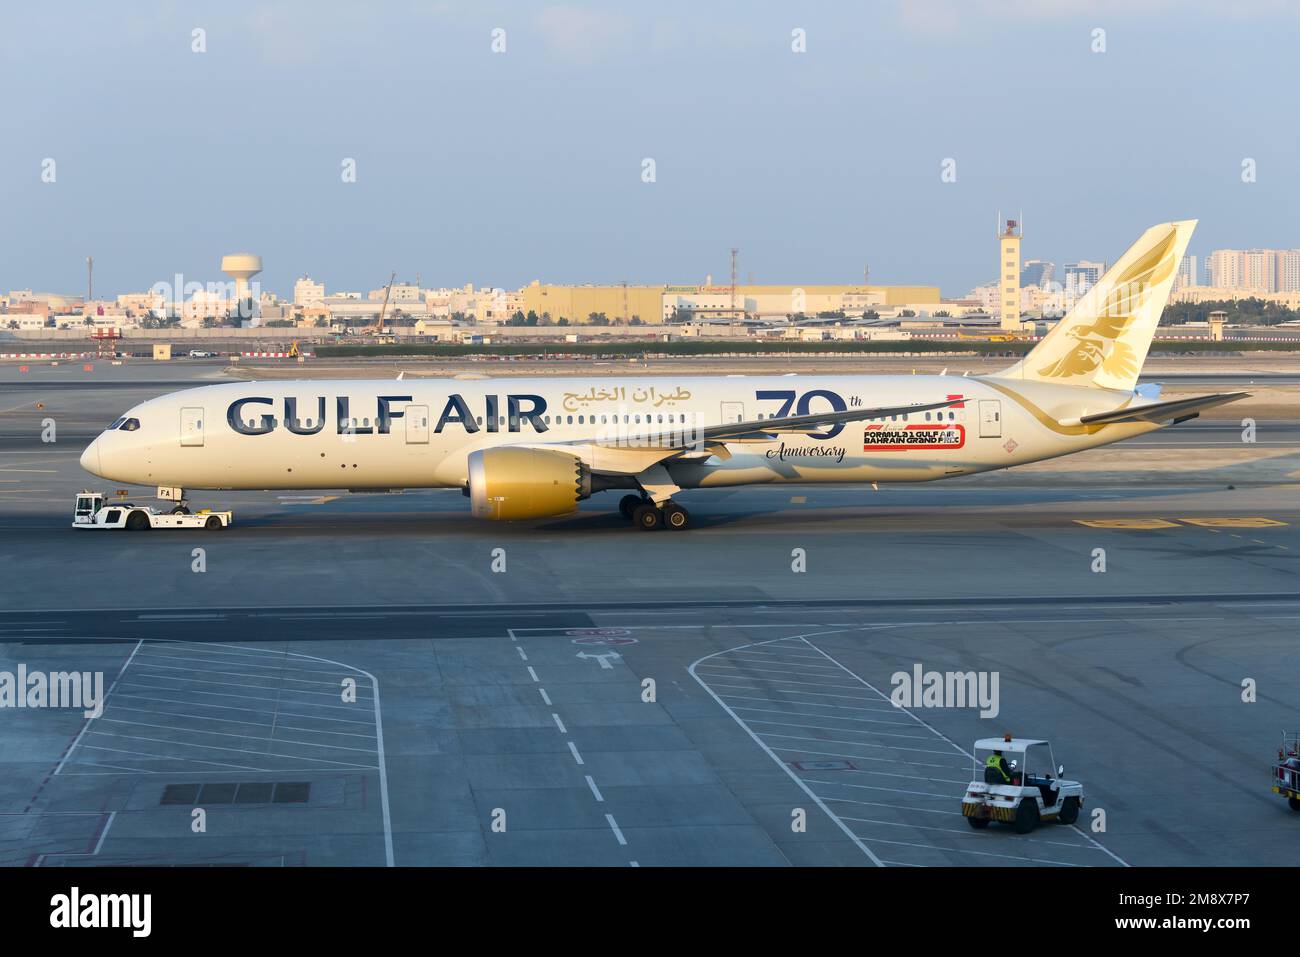 Boeing 787 de Gulf Air à l'aéroport de Bahreïn. Avion 787 Dreamliner de GulfAir / Gulf Air. Porte-drapeau de Bahreïn. Banque D'Images